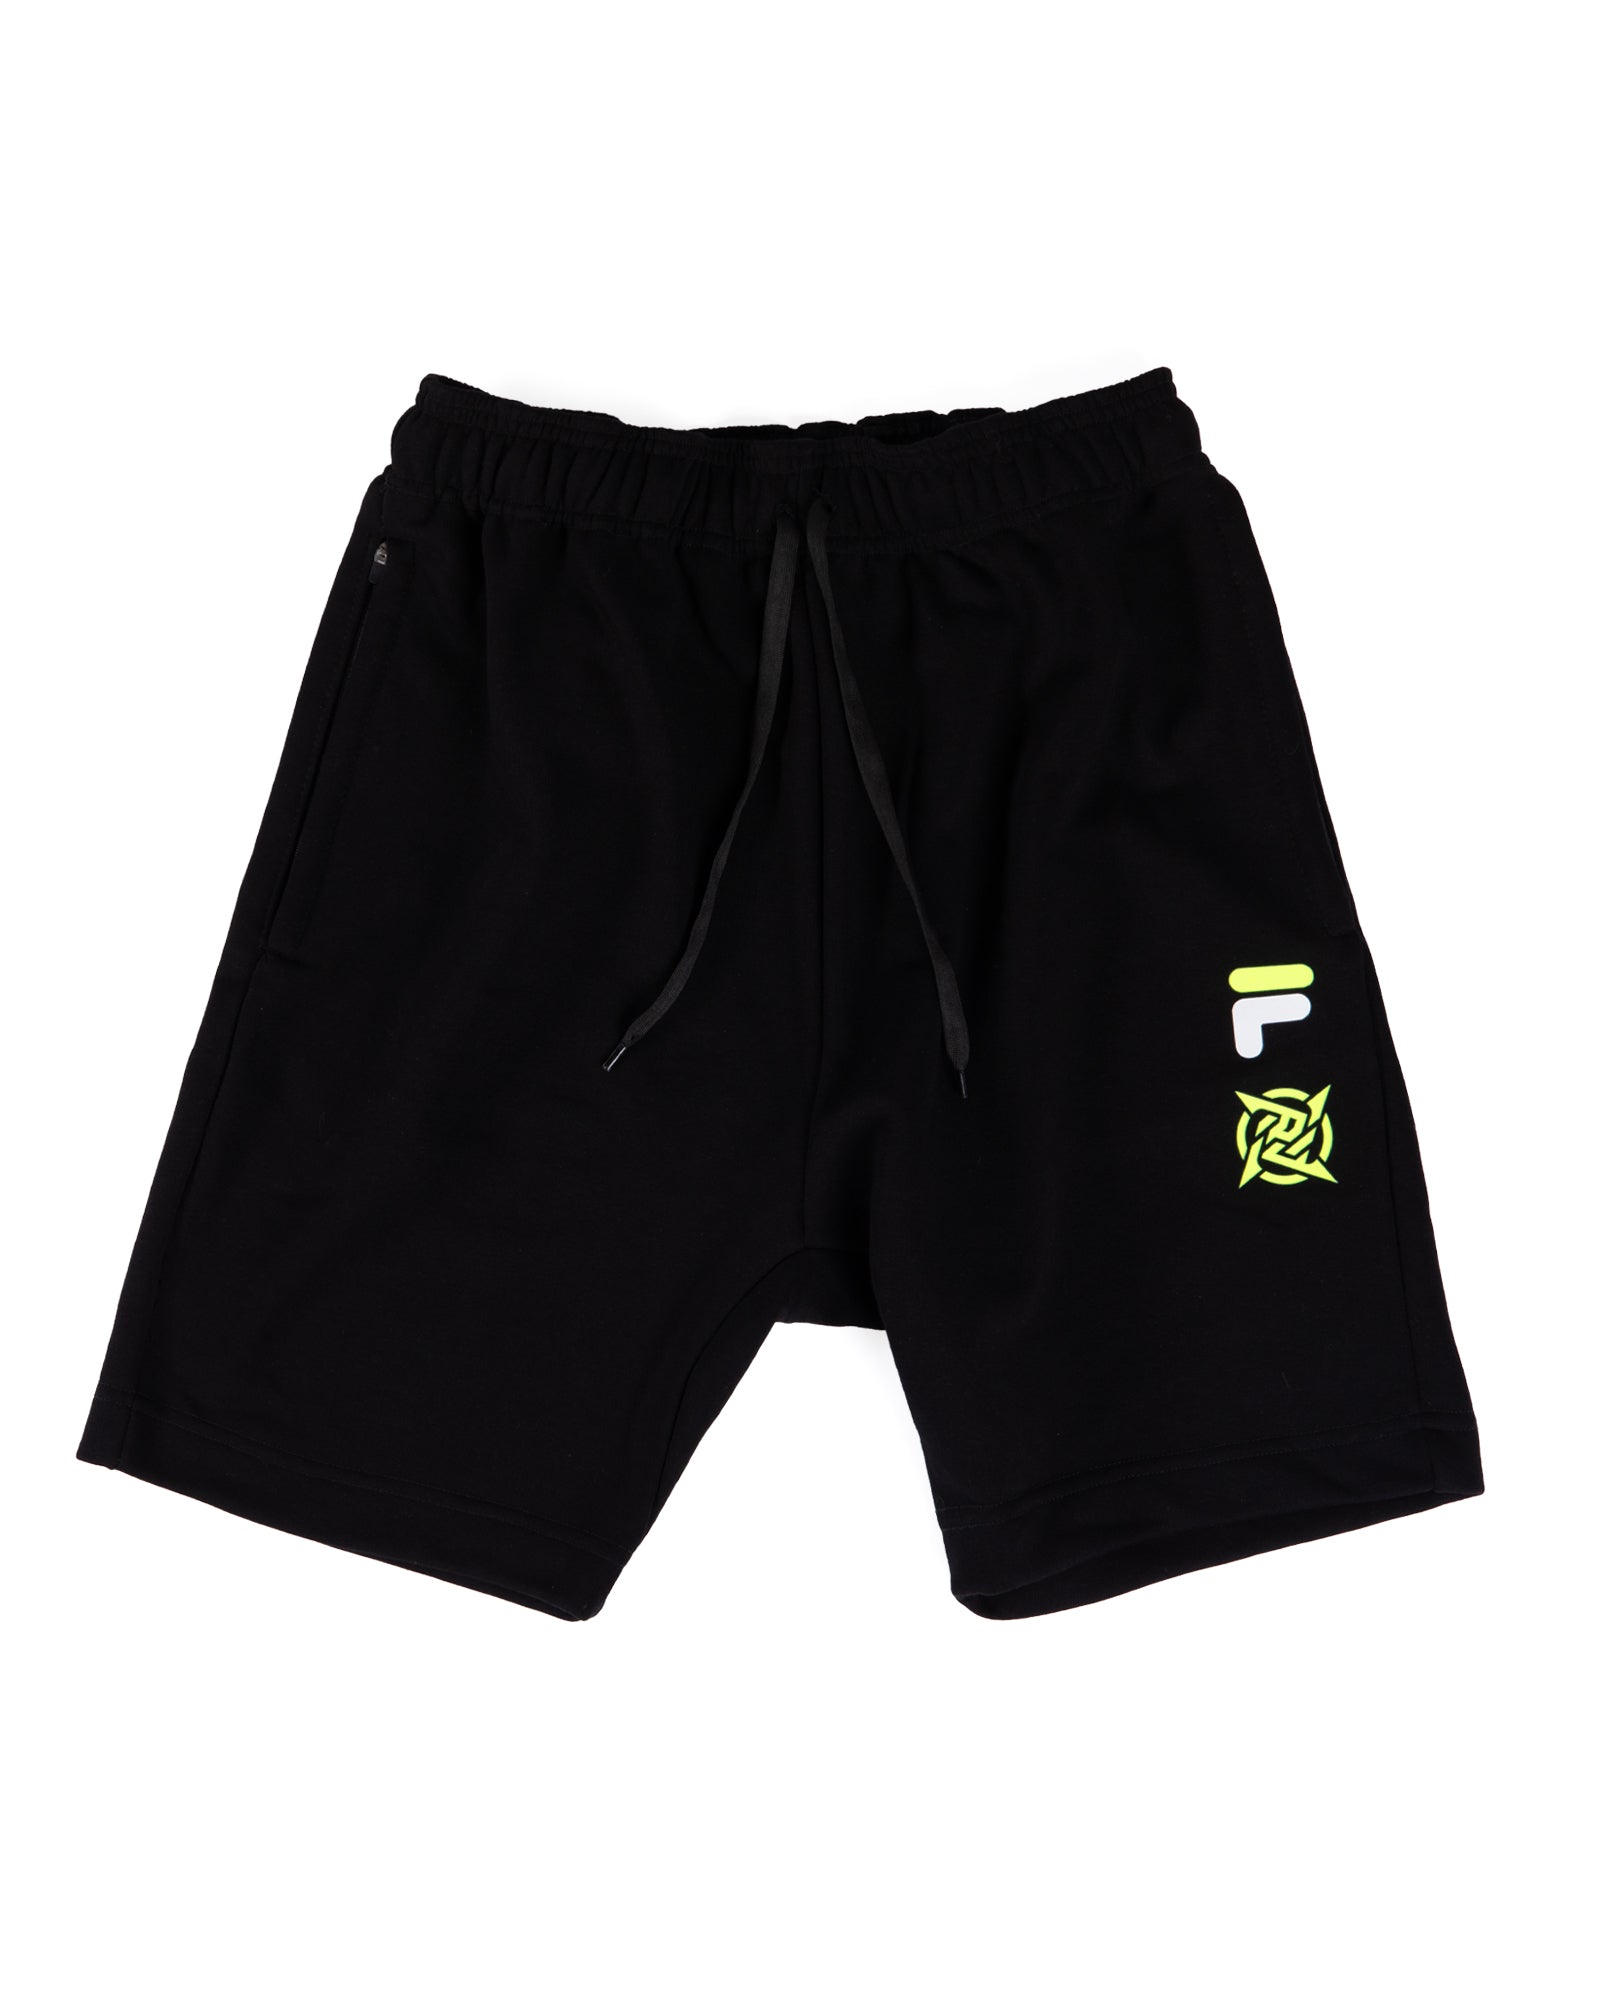 NIPxFILA - Black Shorts | Ninjas in Pyjamas Shop - Buy Now!